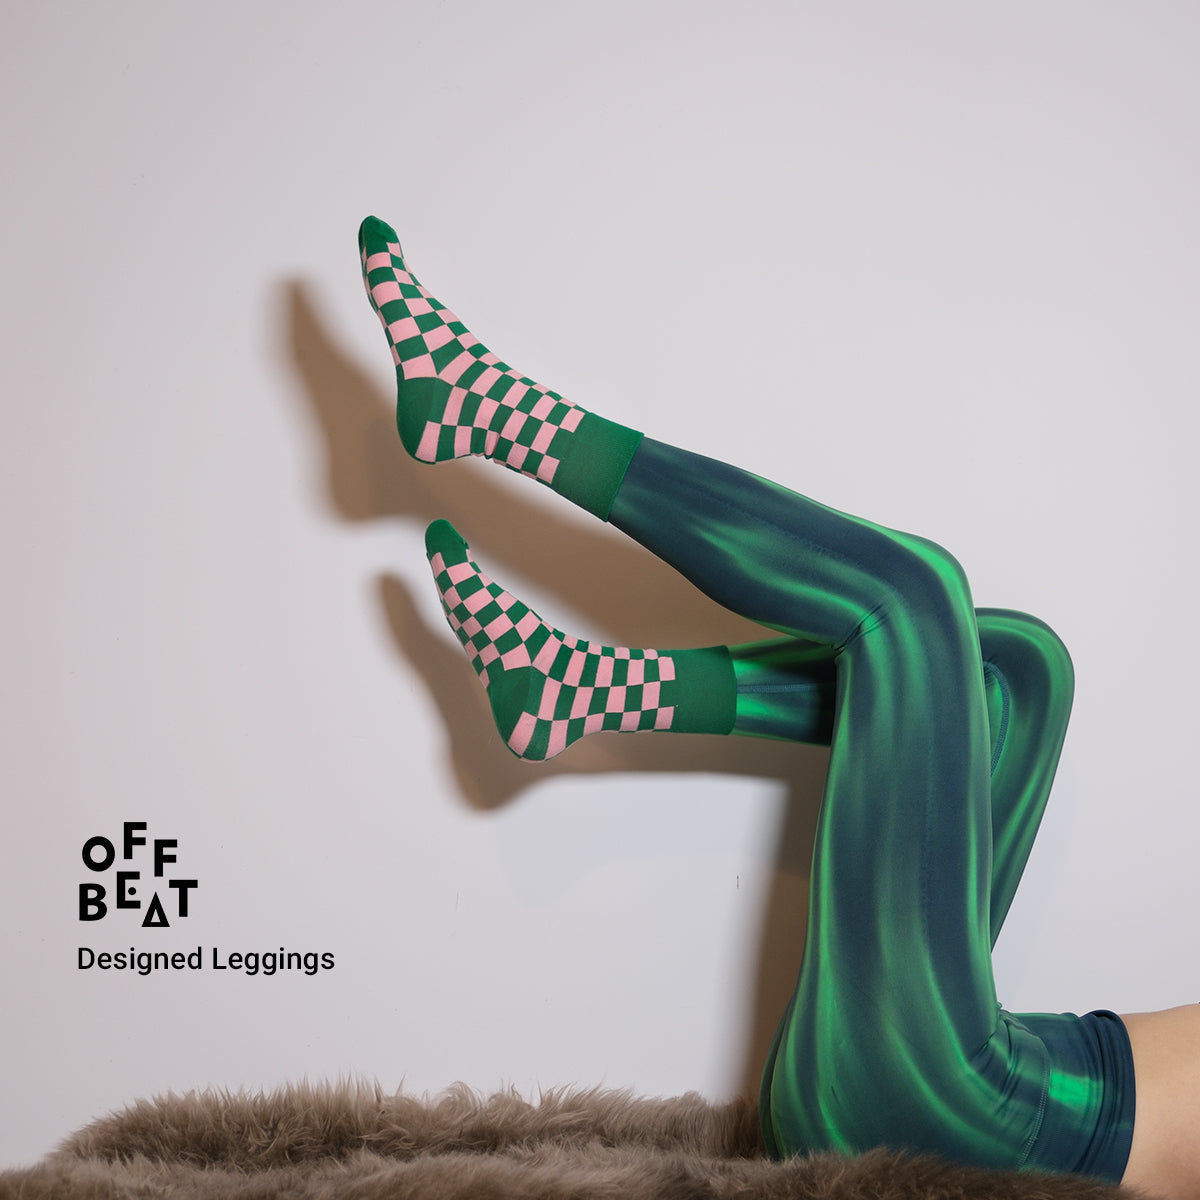 Sport/Yoga designed leggings from Offbeat, green spectrum